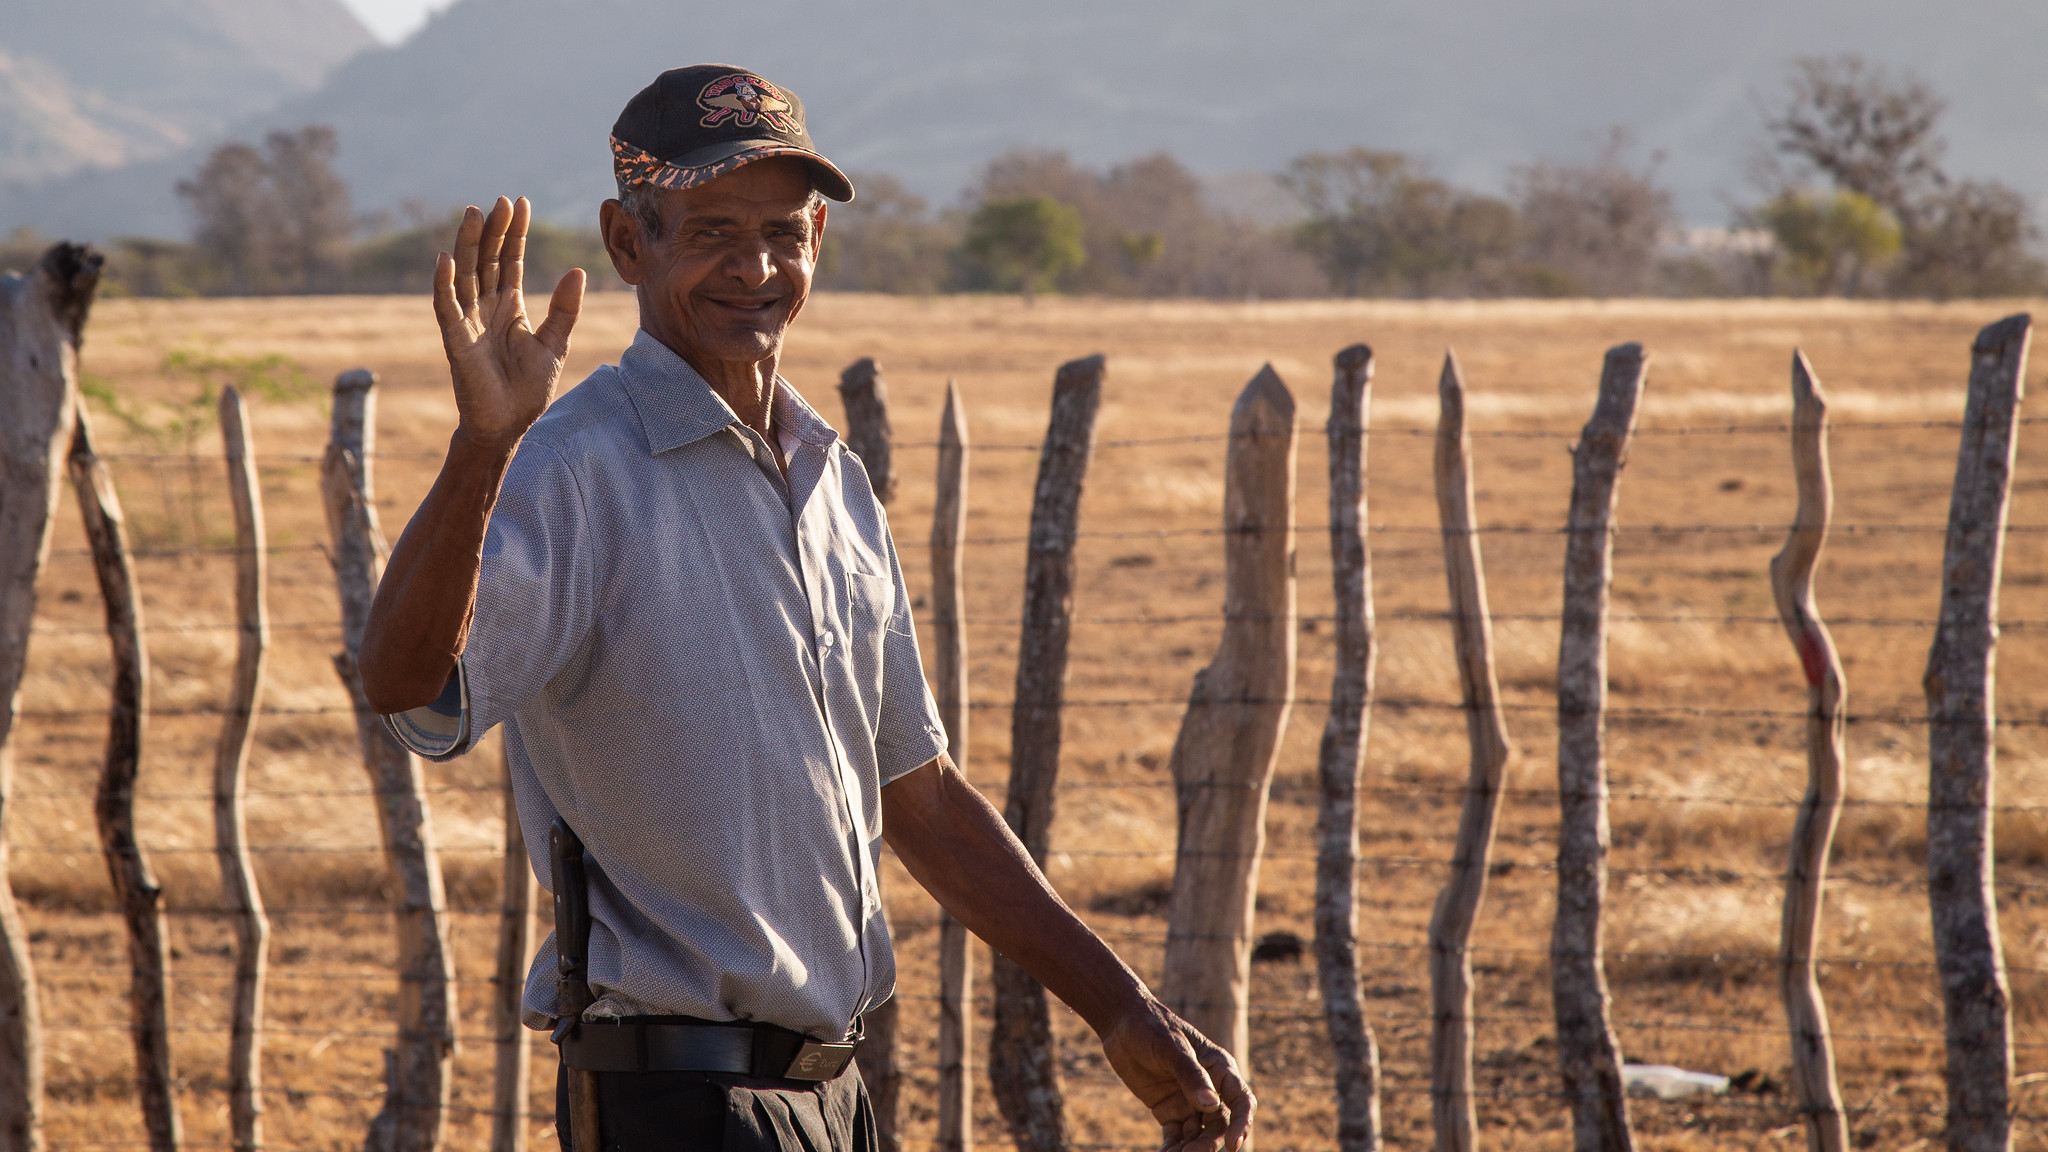 REPÚBLICA DOMINICANA: Presidente Danilo Medina felicita a agricultores, personas que ocupan un lugar preferencial en las atenciones del Gobierno